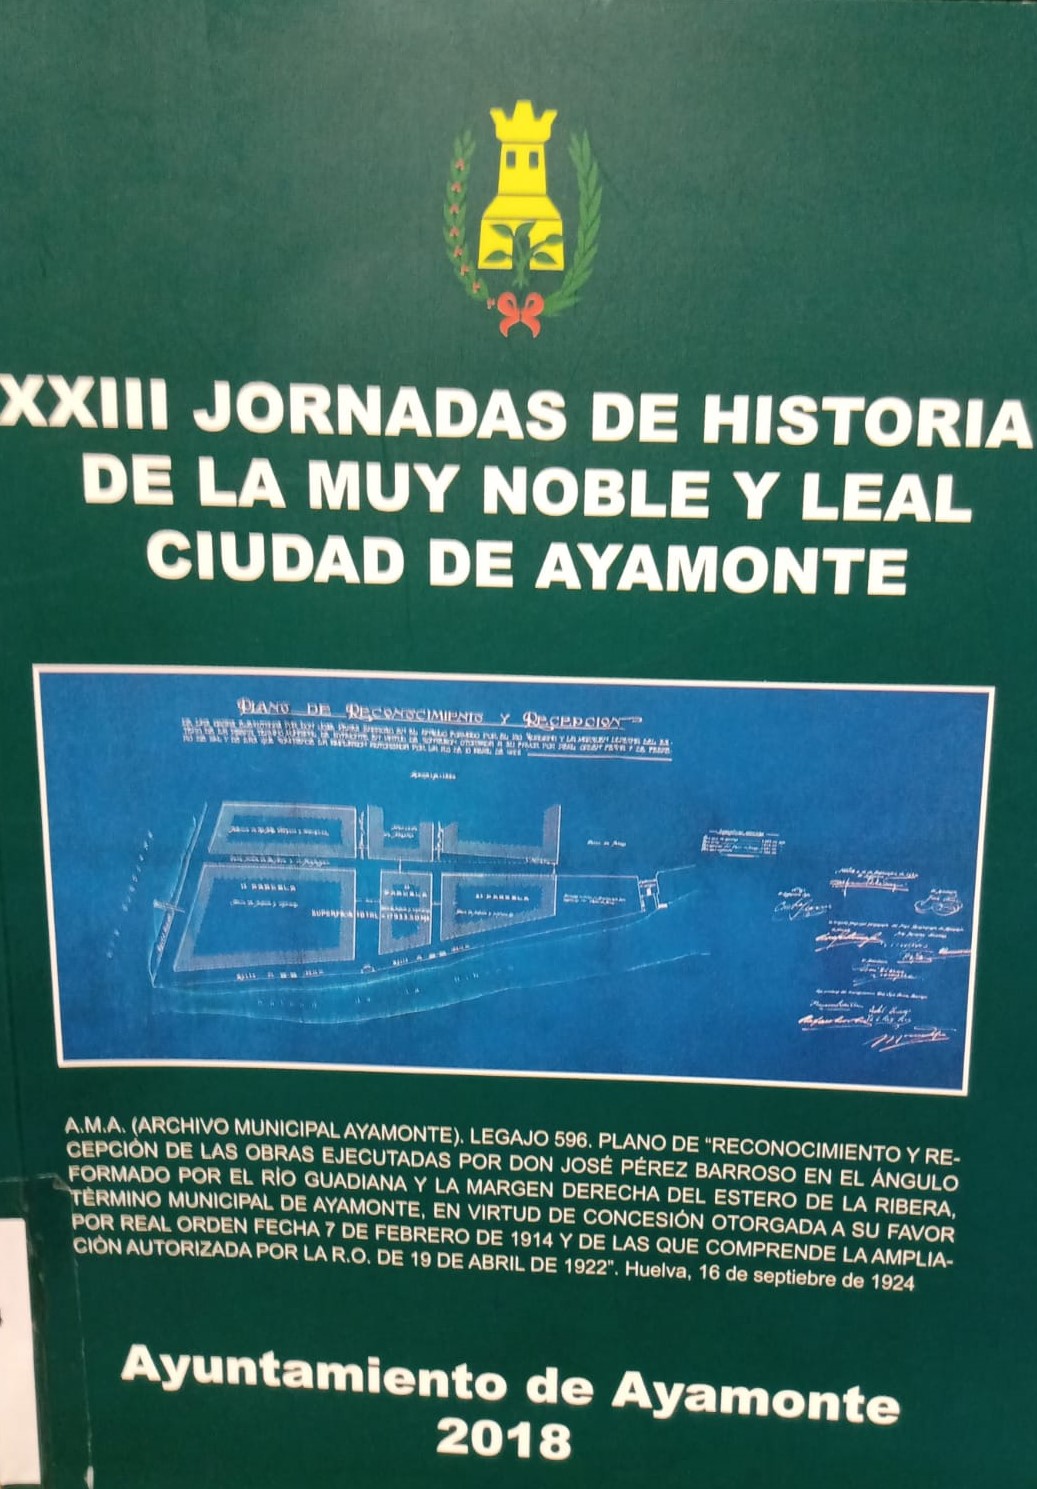 Imagen de portada del libro XXIII Jornadas de historia de Ayamonte